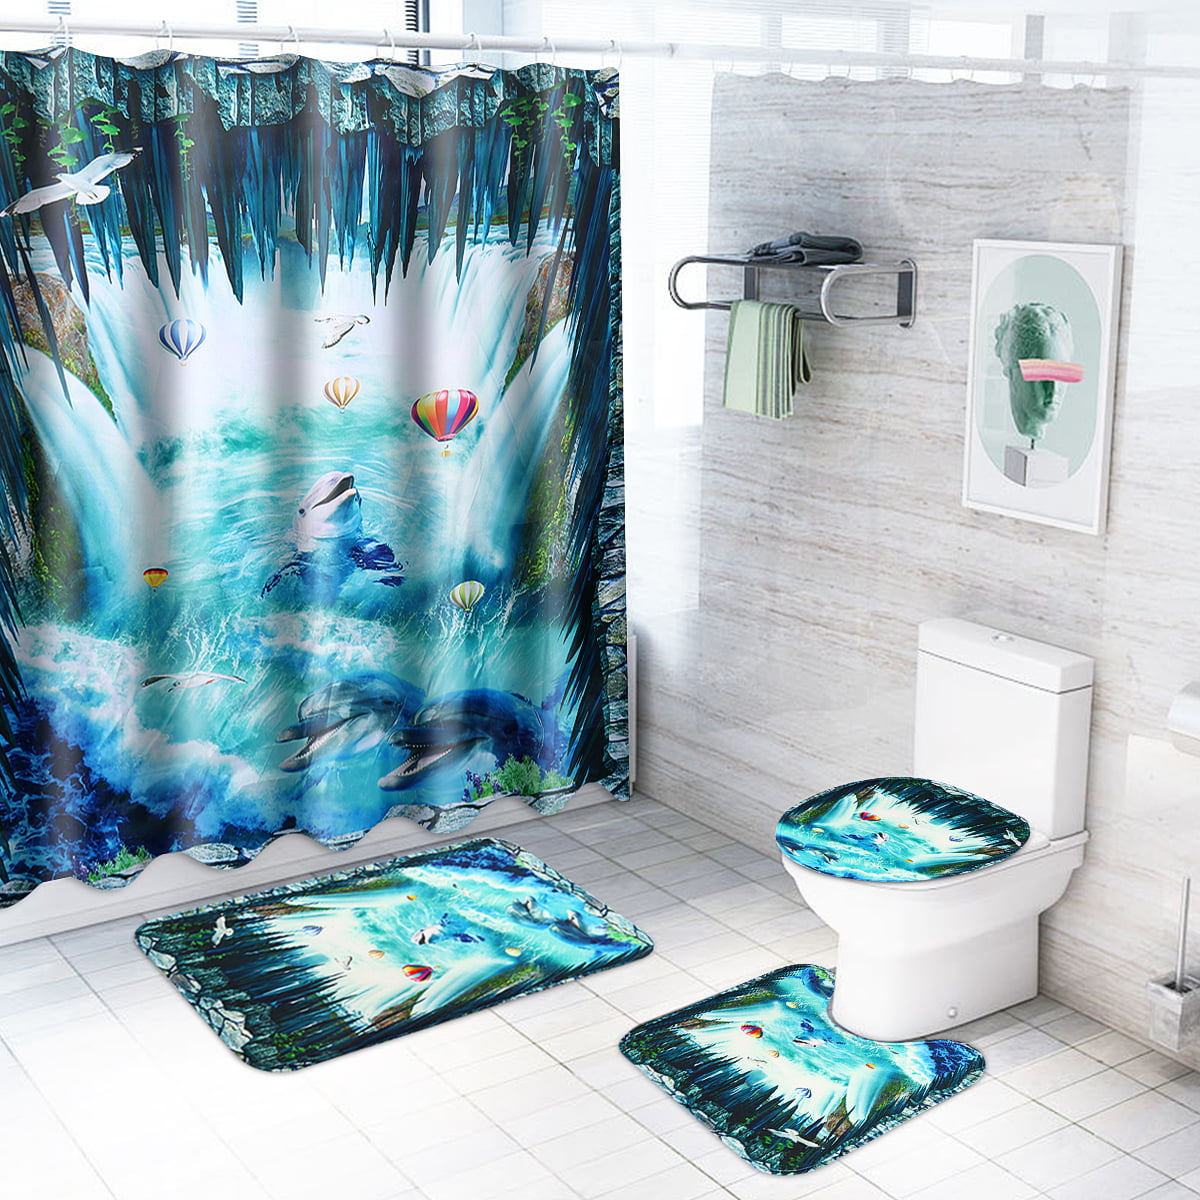 Revolver Gun Bullet Shower Curtain Set Bathroom Mat Non-Slip Toilet Lid Cover 